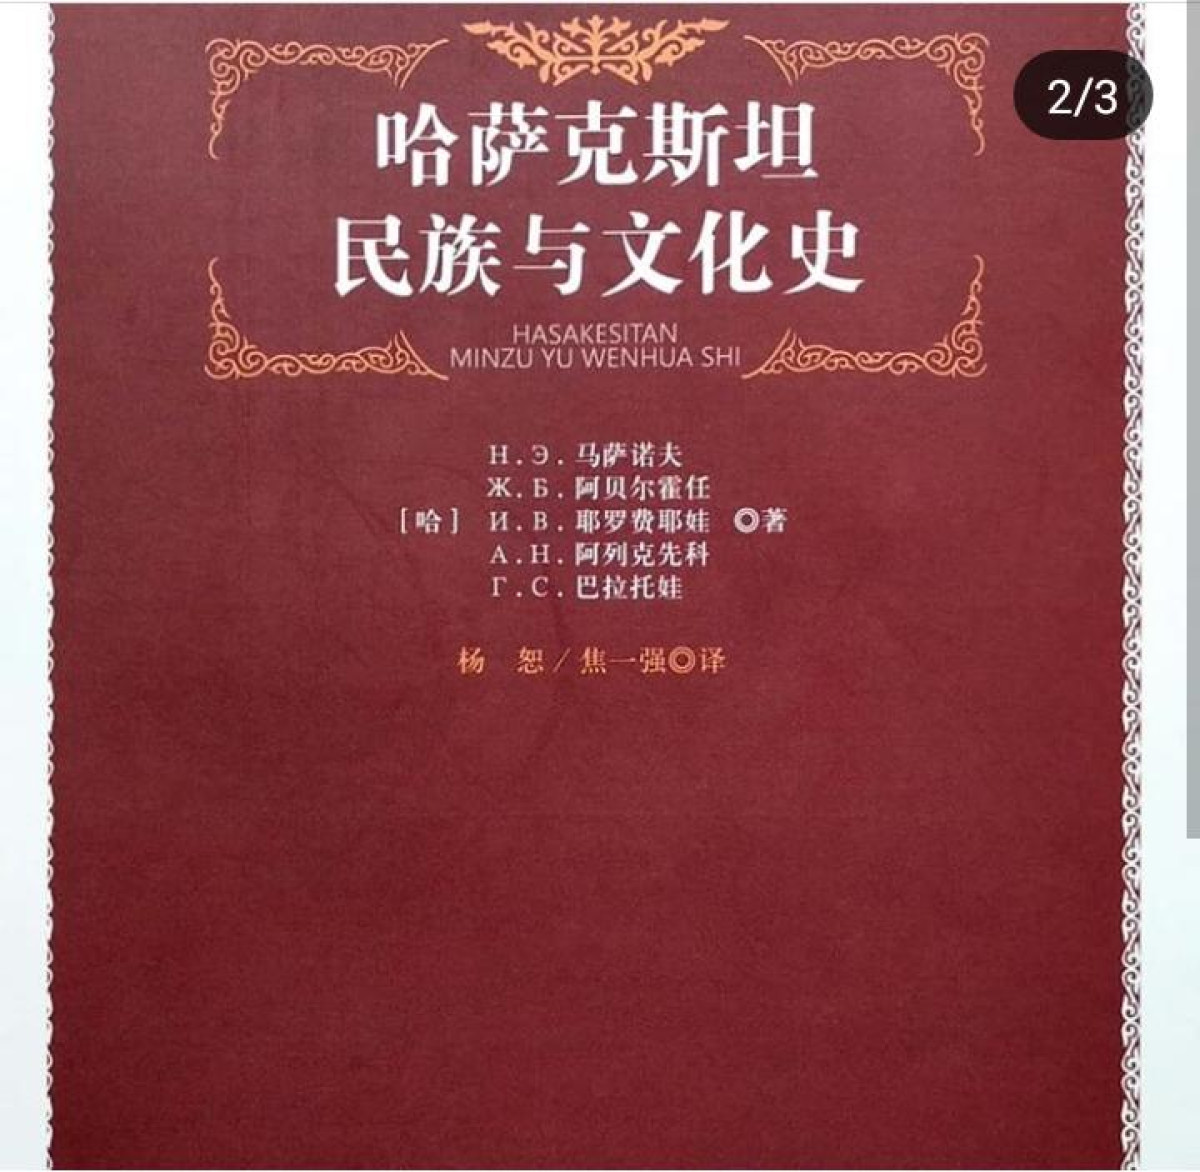 Книга, рассказывающая о народах и культурах Казахстана, переведена  на китайский язык